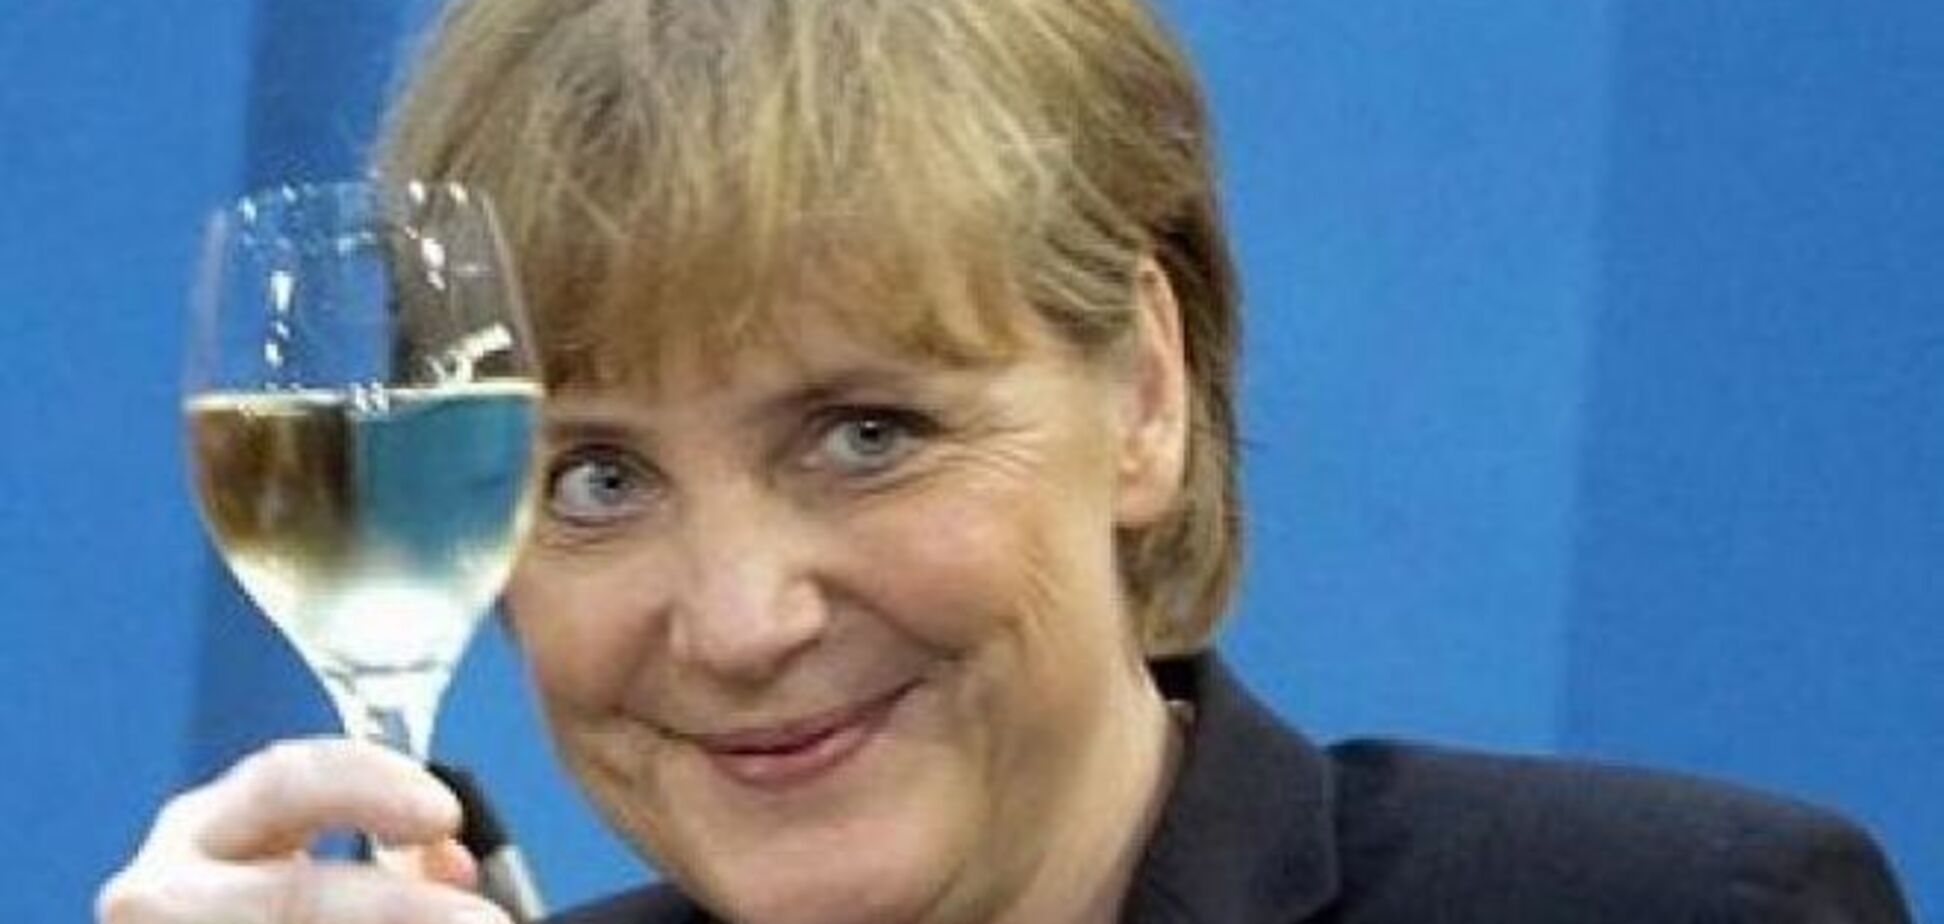 Меркель підкорила генсека НАТО своїм умінням пити алкоголь